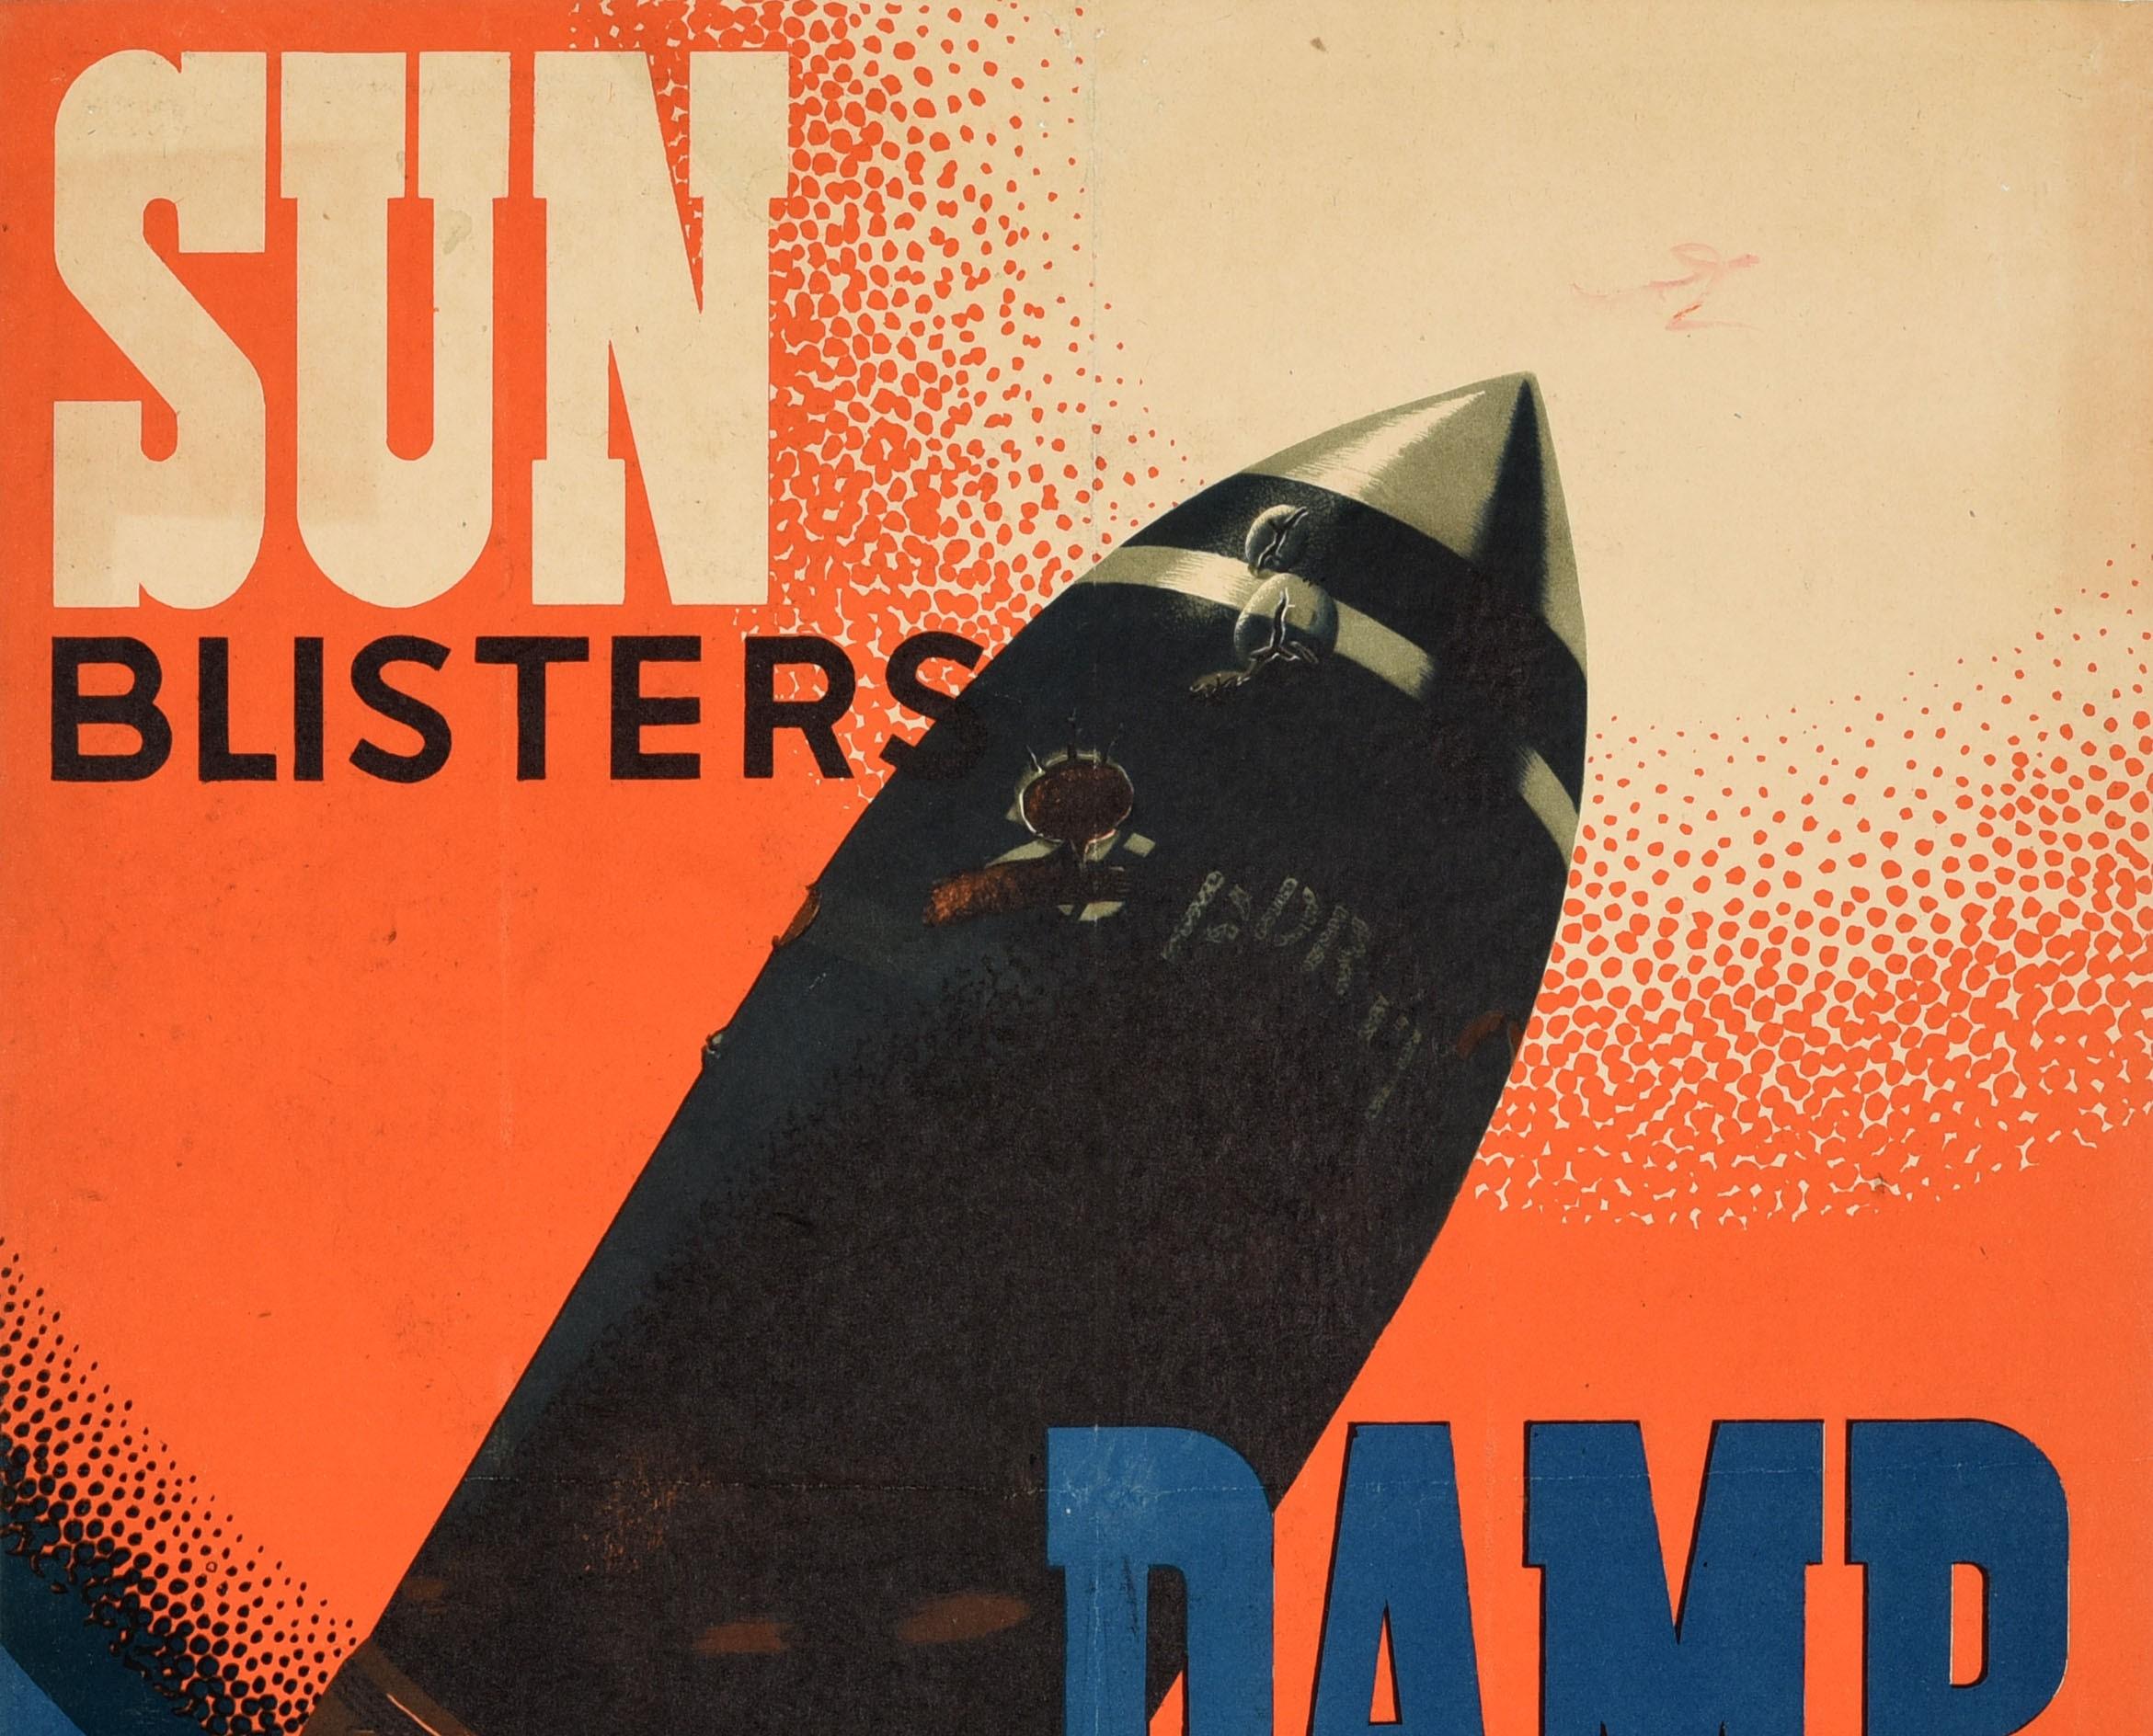 Originales Propagandaplakat für die Sicherheit im Zweiten Weltkrieg - Sun Blisters Damp Rusts Ammunition Keep It Cover - mit einem dynamischen Entwurf des bedeutenden britischen Plakatkünstlers Frank Newbould (1887-1951) von durch Hitze und Wasser